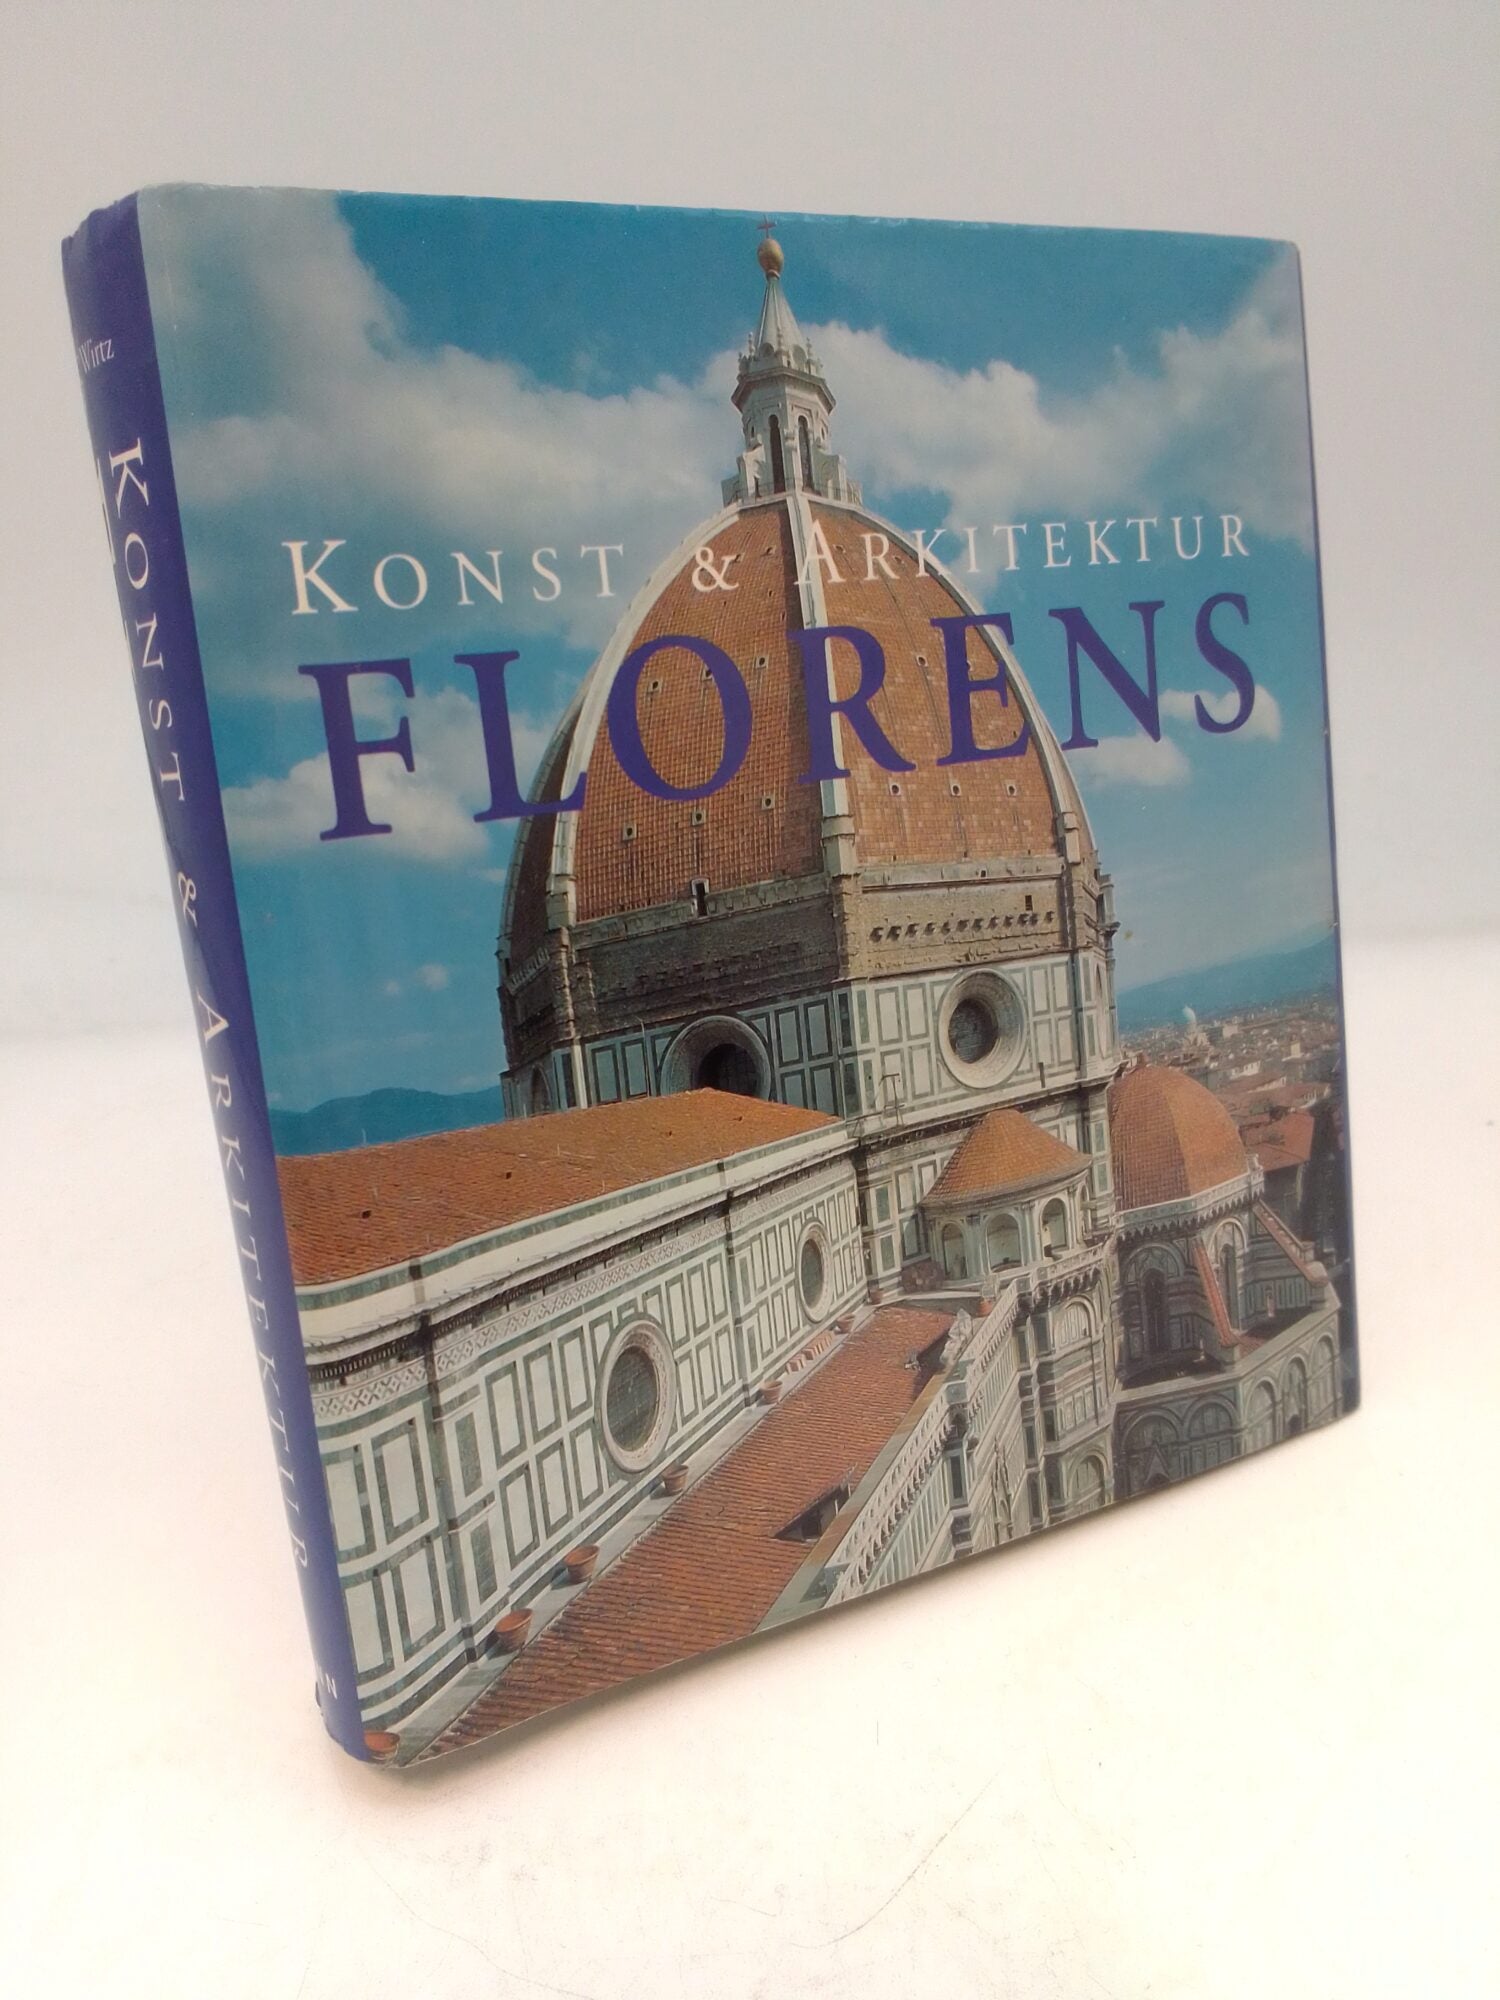 Wirtz, Rolf C. | Florens : Konst & arkitektur